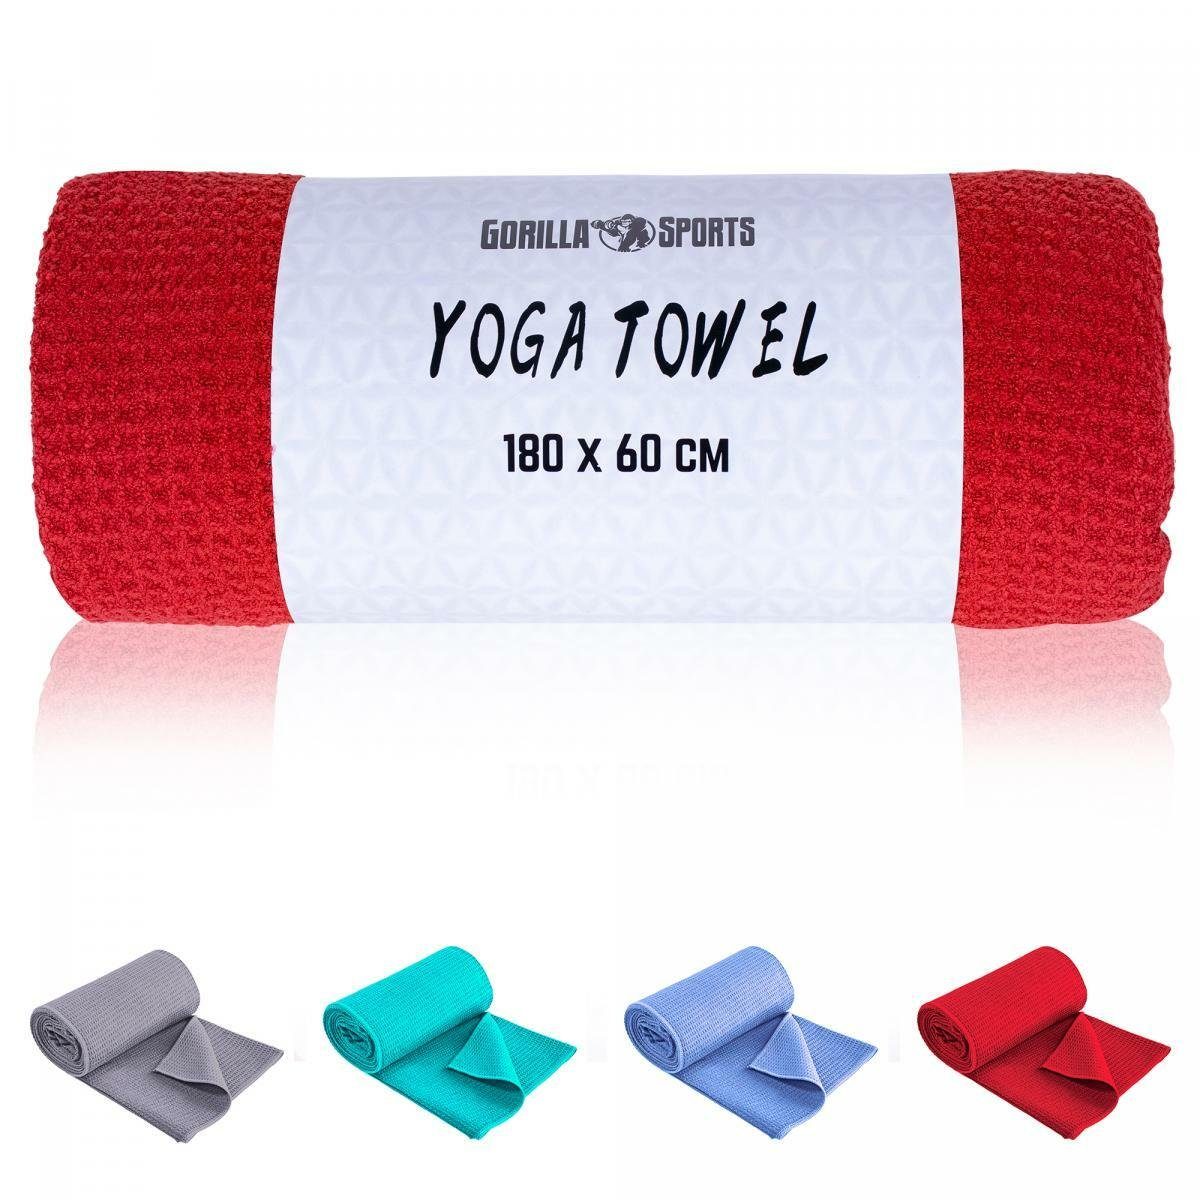 Yoga Saugfähig, Sporthandtuch GORILLA Towel, Schnelltrocknend Strandtuch, 180x60cm, SPORTS Handtuch Dunkelrot